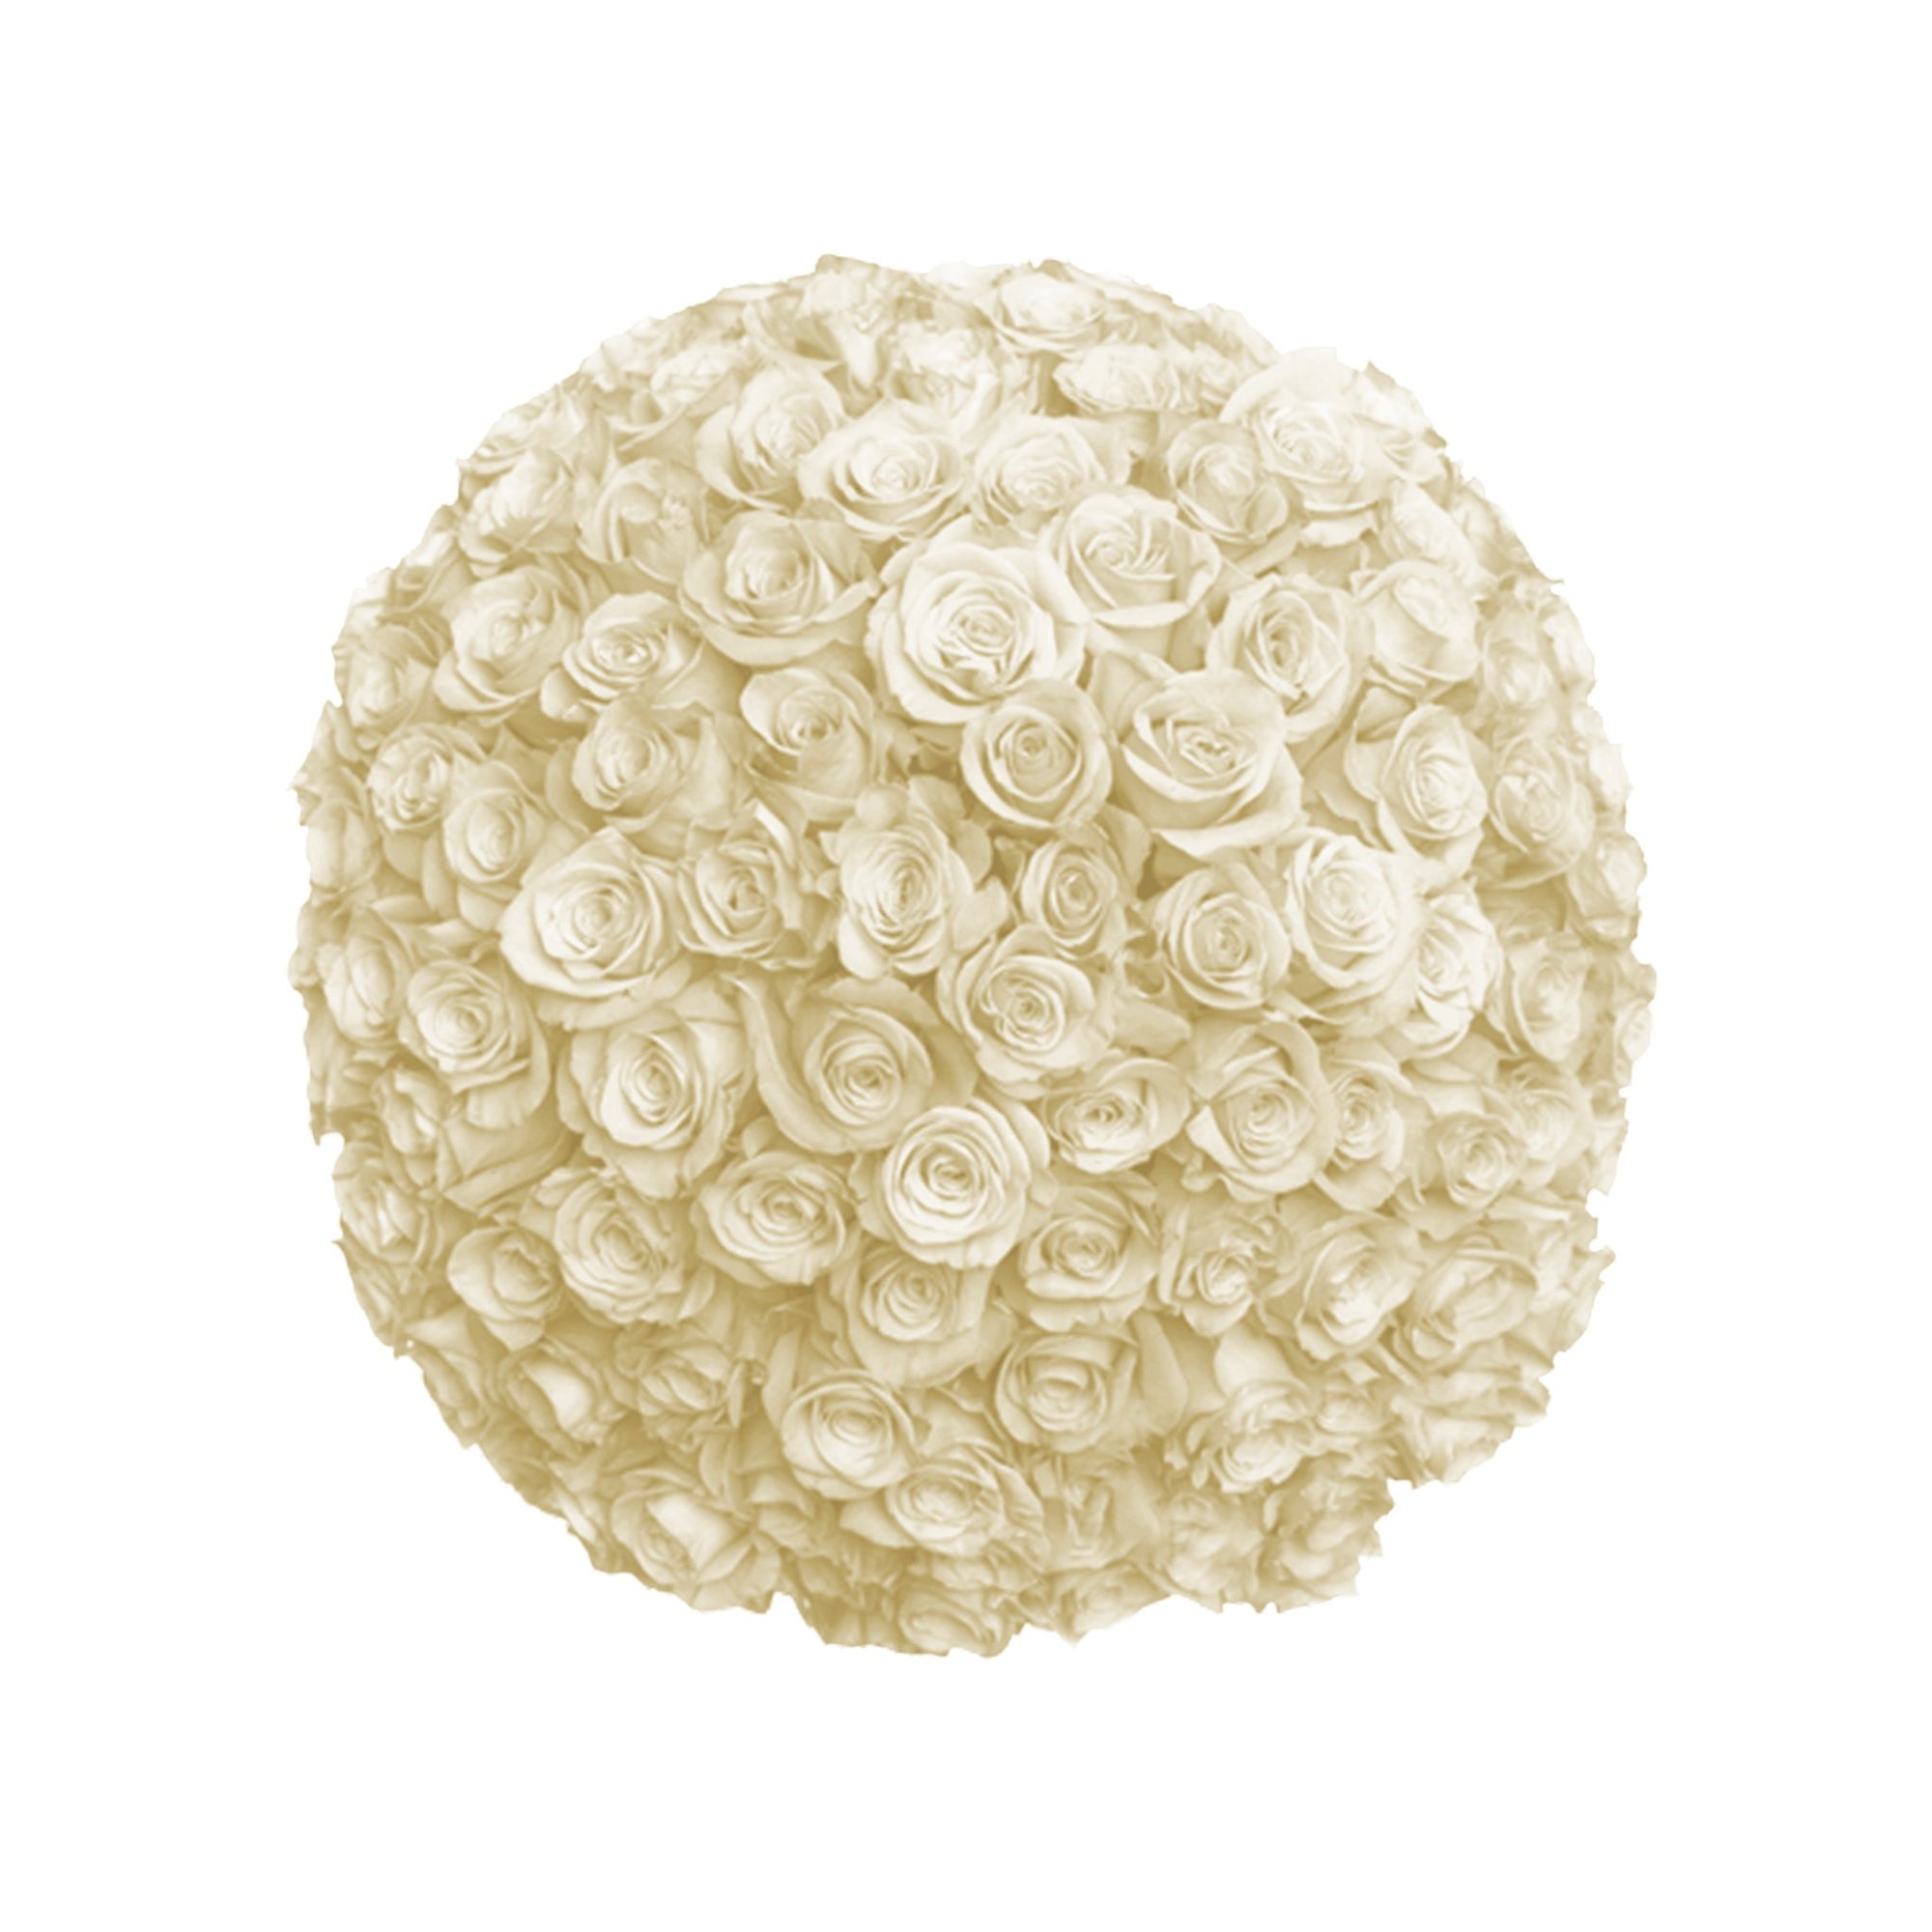 Fresh Roses in a Crystal Vase | White - 1 Dozen - Roses